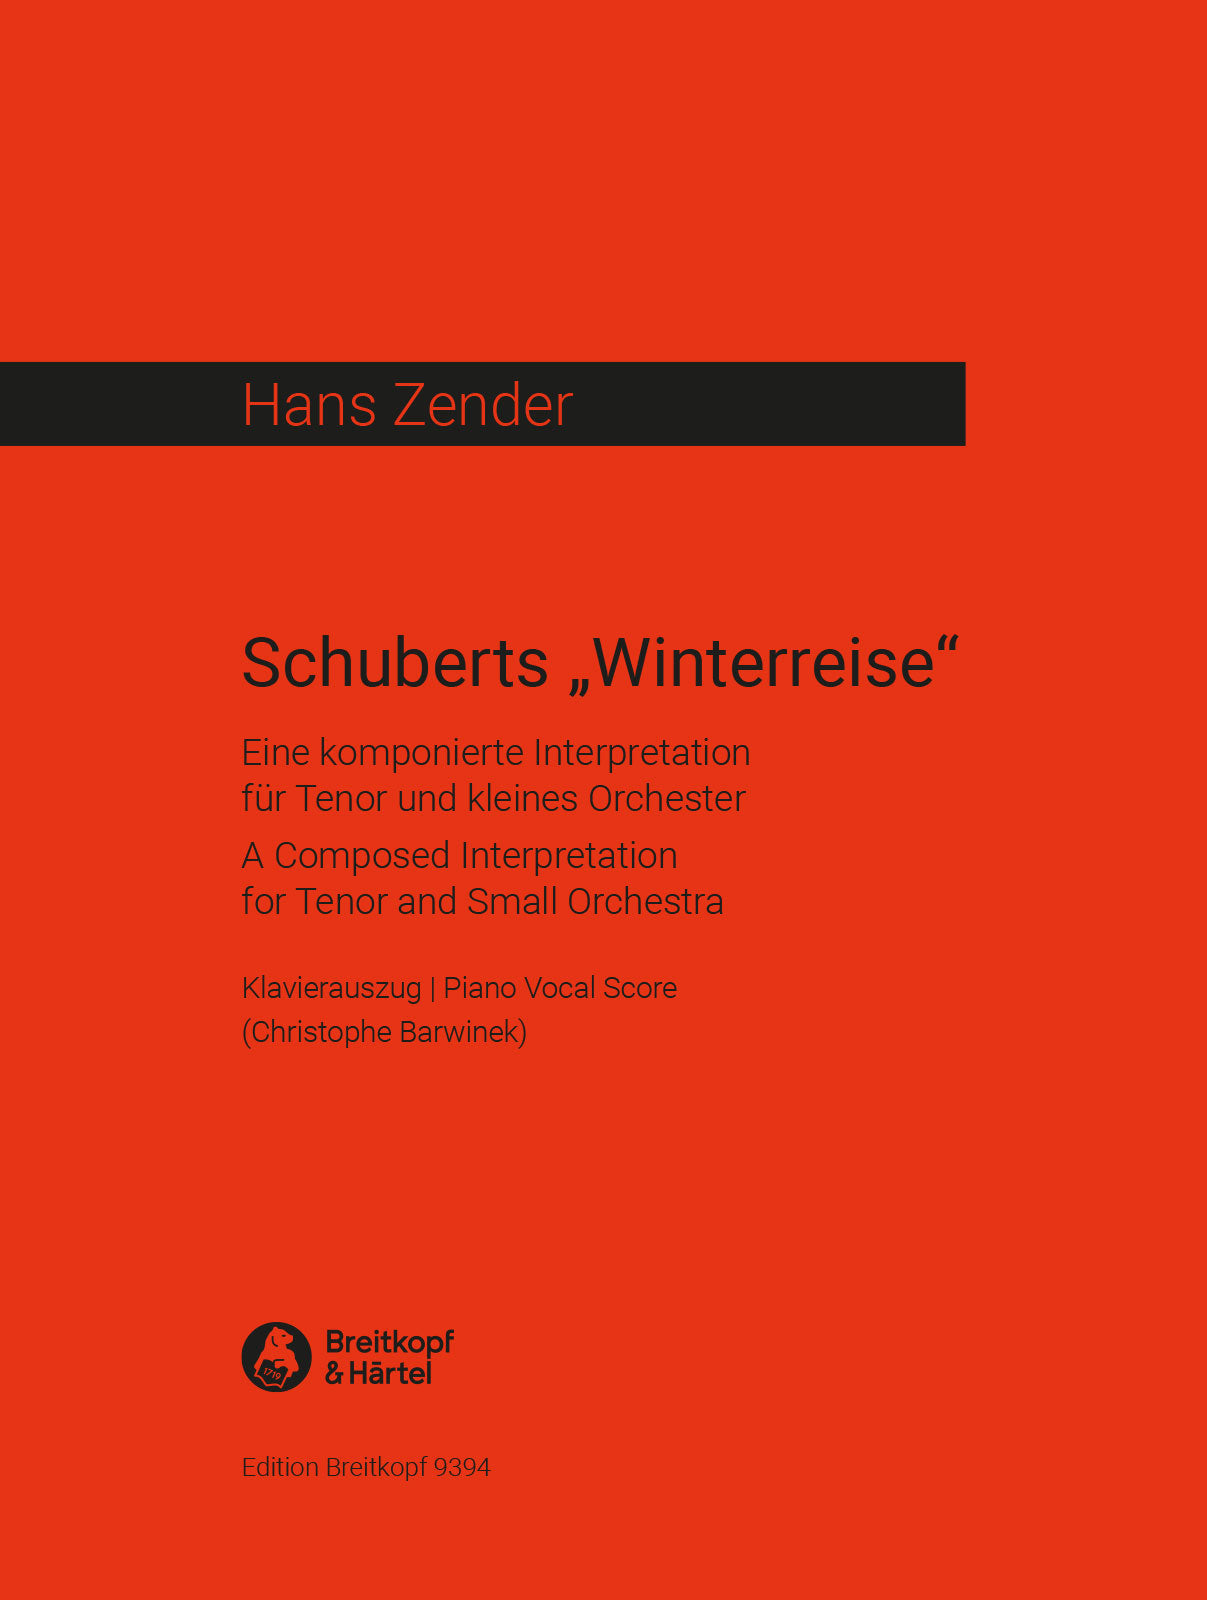 Zender: Schubert's "Winterreise" - A Composed Interpretation